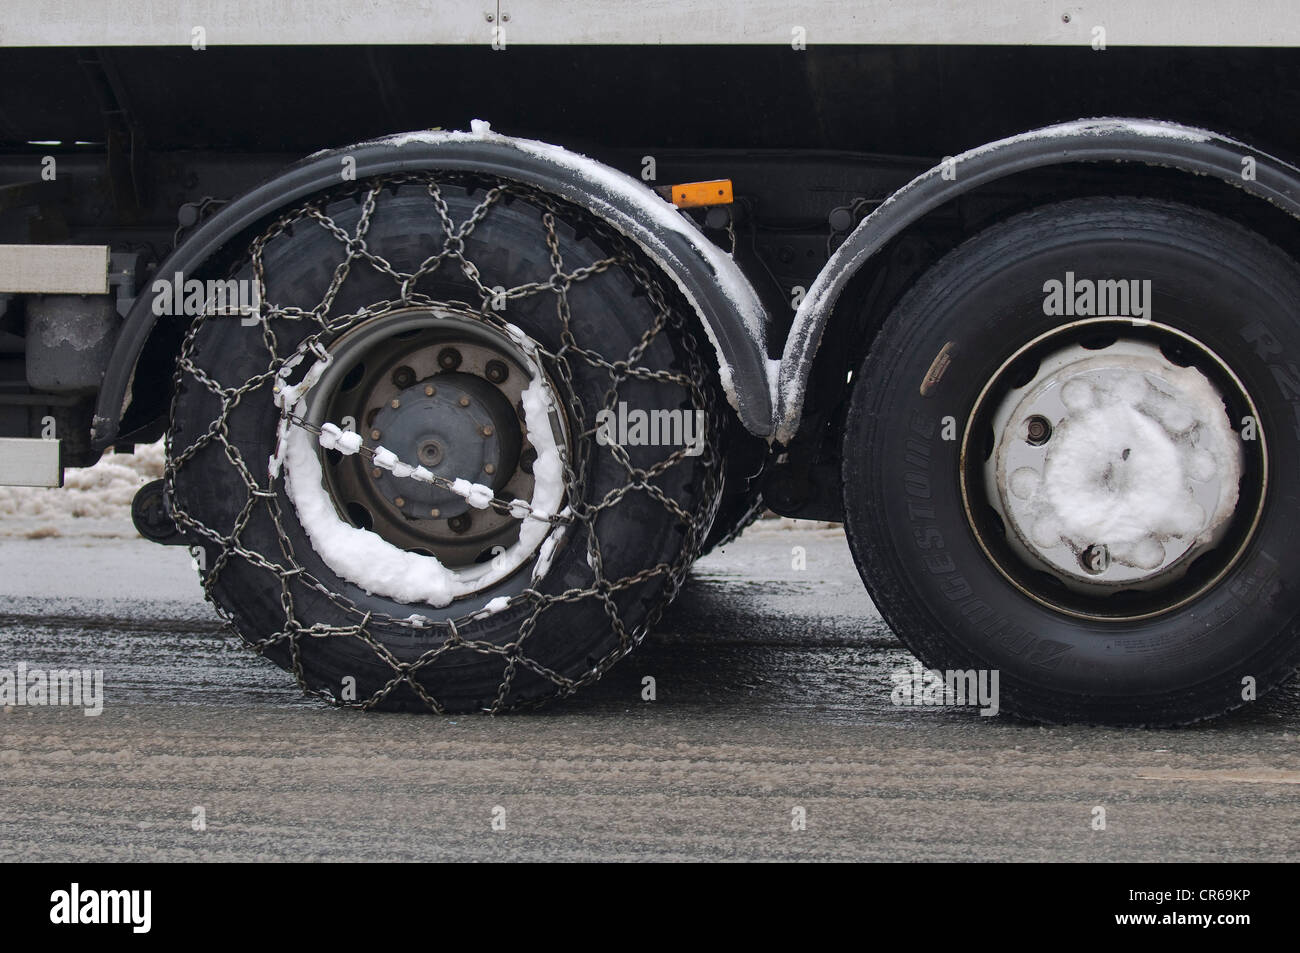 Snow chains truck -Fotos und -Bildmaterial in hoher Auflösung – Alamy